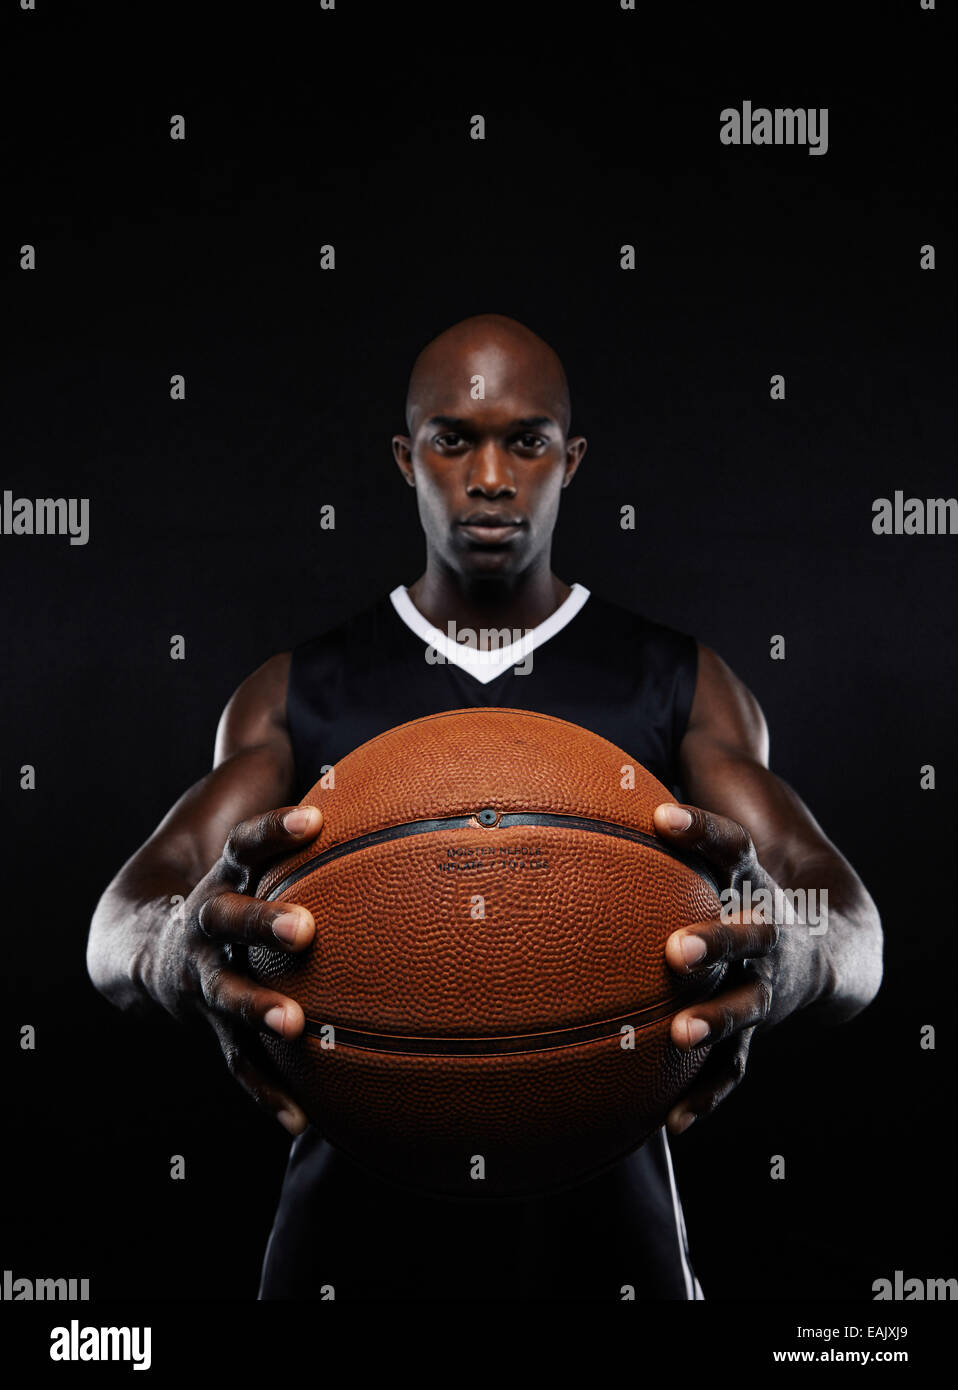 Portrait de joueur de basket-ball africain professionnel avec une balle à l'arrière-plan noir. Fit young man holding basket-ball. Banque D'Images